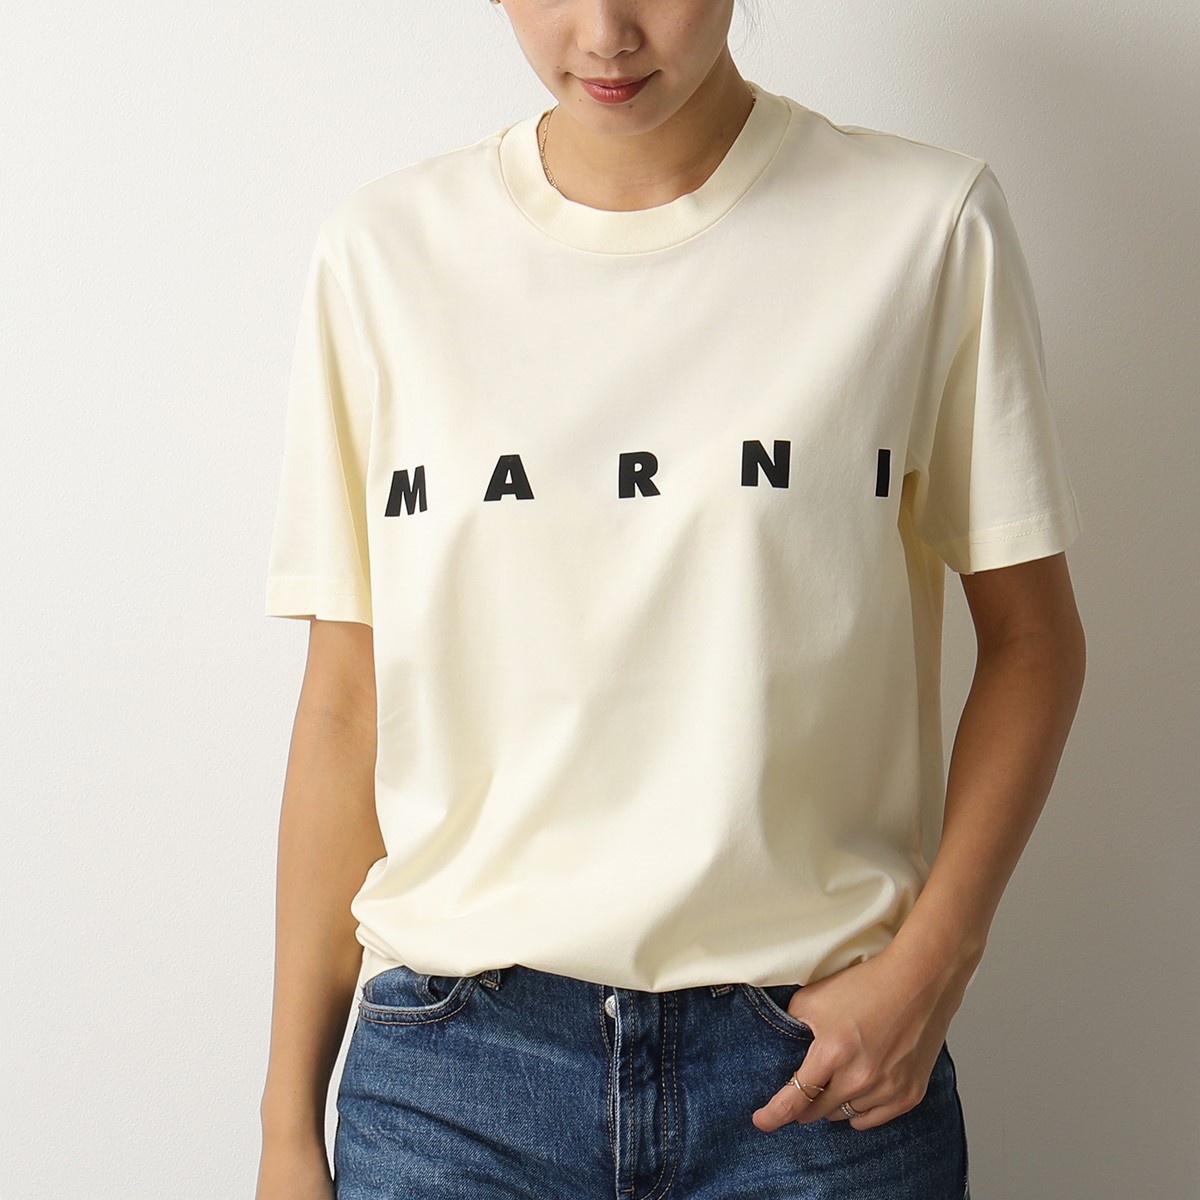 MARNI マルニ HUMU0170P0 S23727 クルーネック 半袖 Tシャツ カットソー ロゴT コットン 00W19 レディース |  インポートセレクト musee